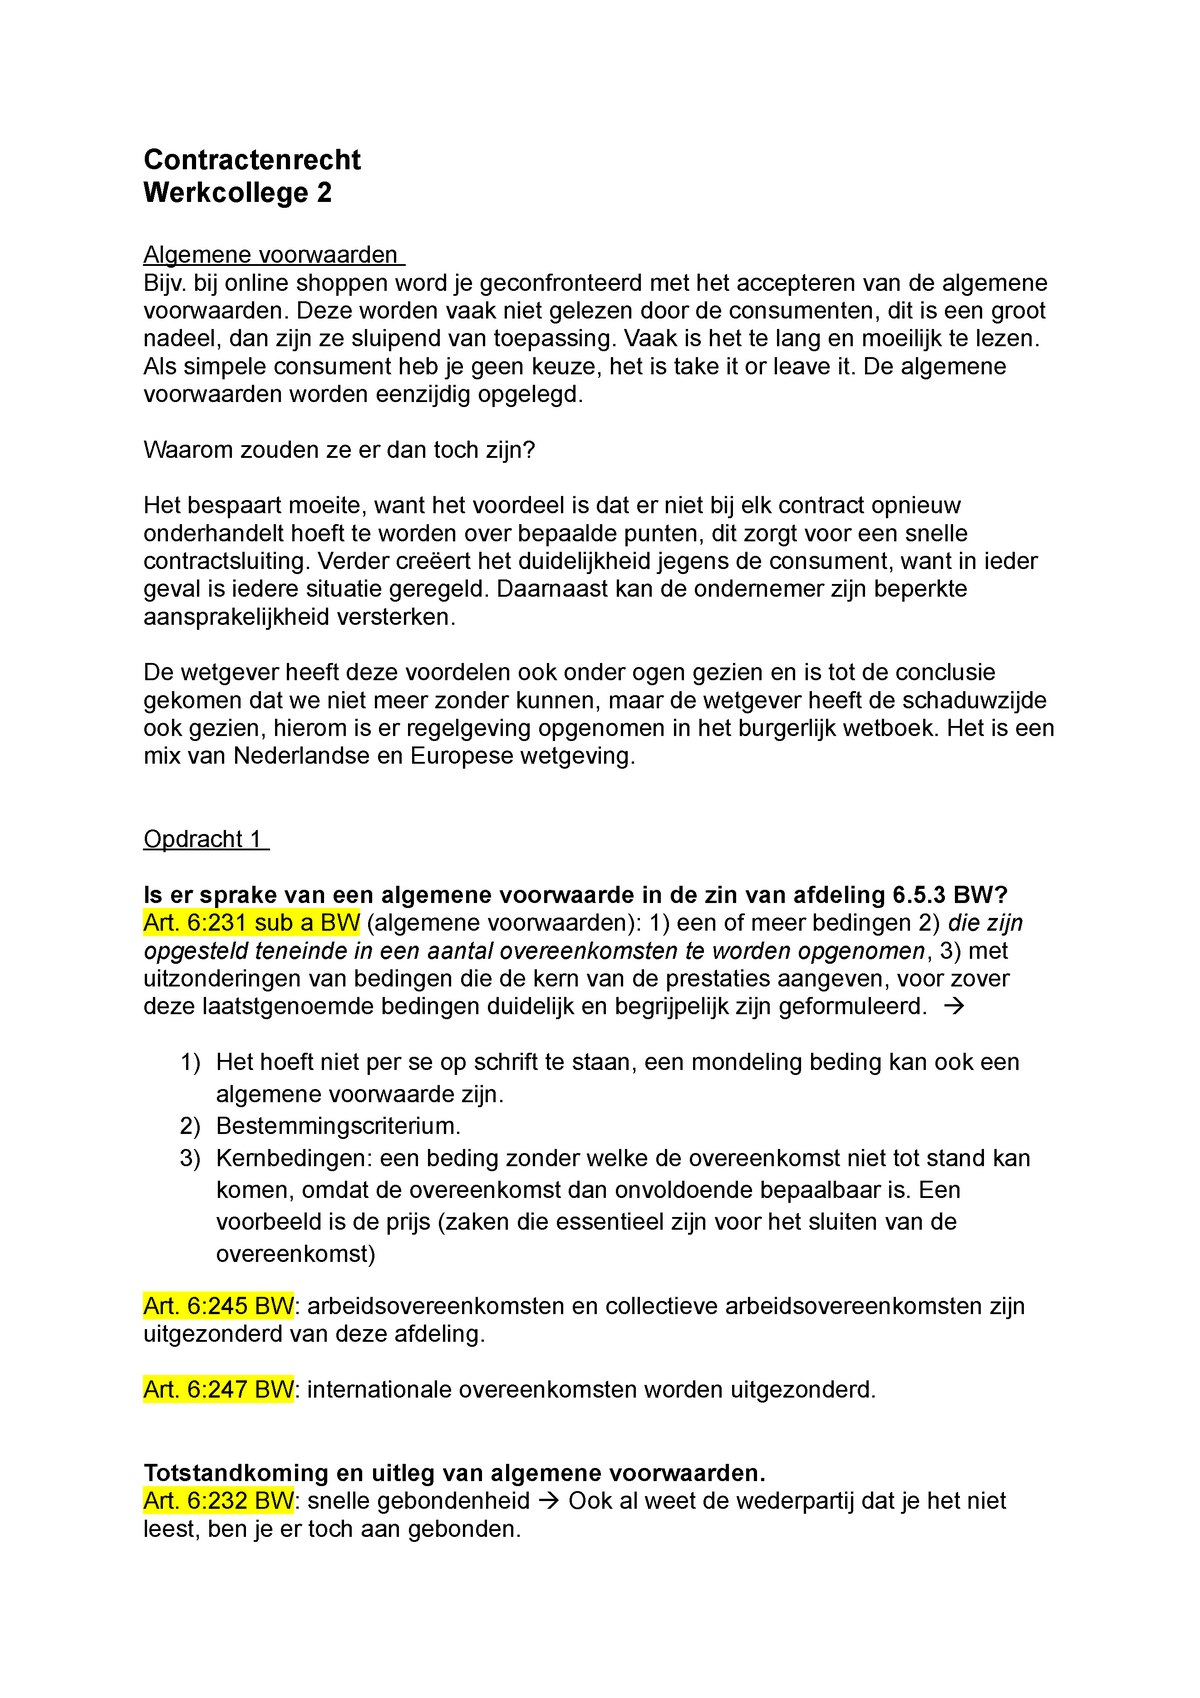 mechanisme Leraar op school Dankbaar WC 2 - Werkcollege 2 uitwerkingen (algemene voorwaarden) + schema -  Contractenrecht Werkcollege 2 - StudeerSnel